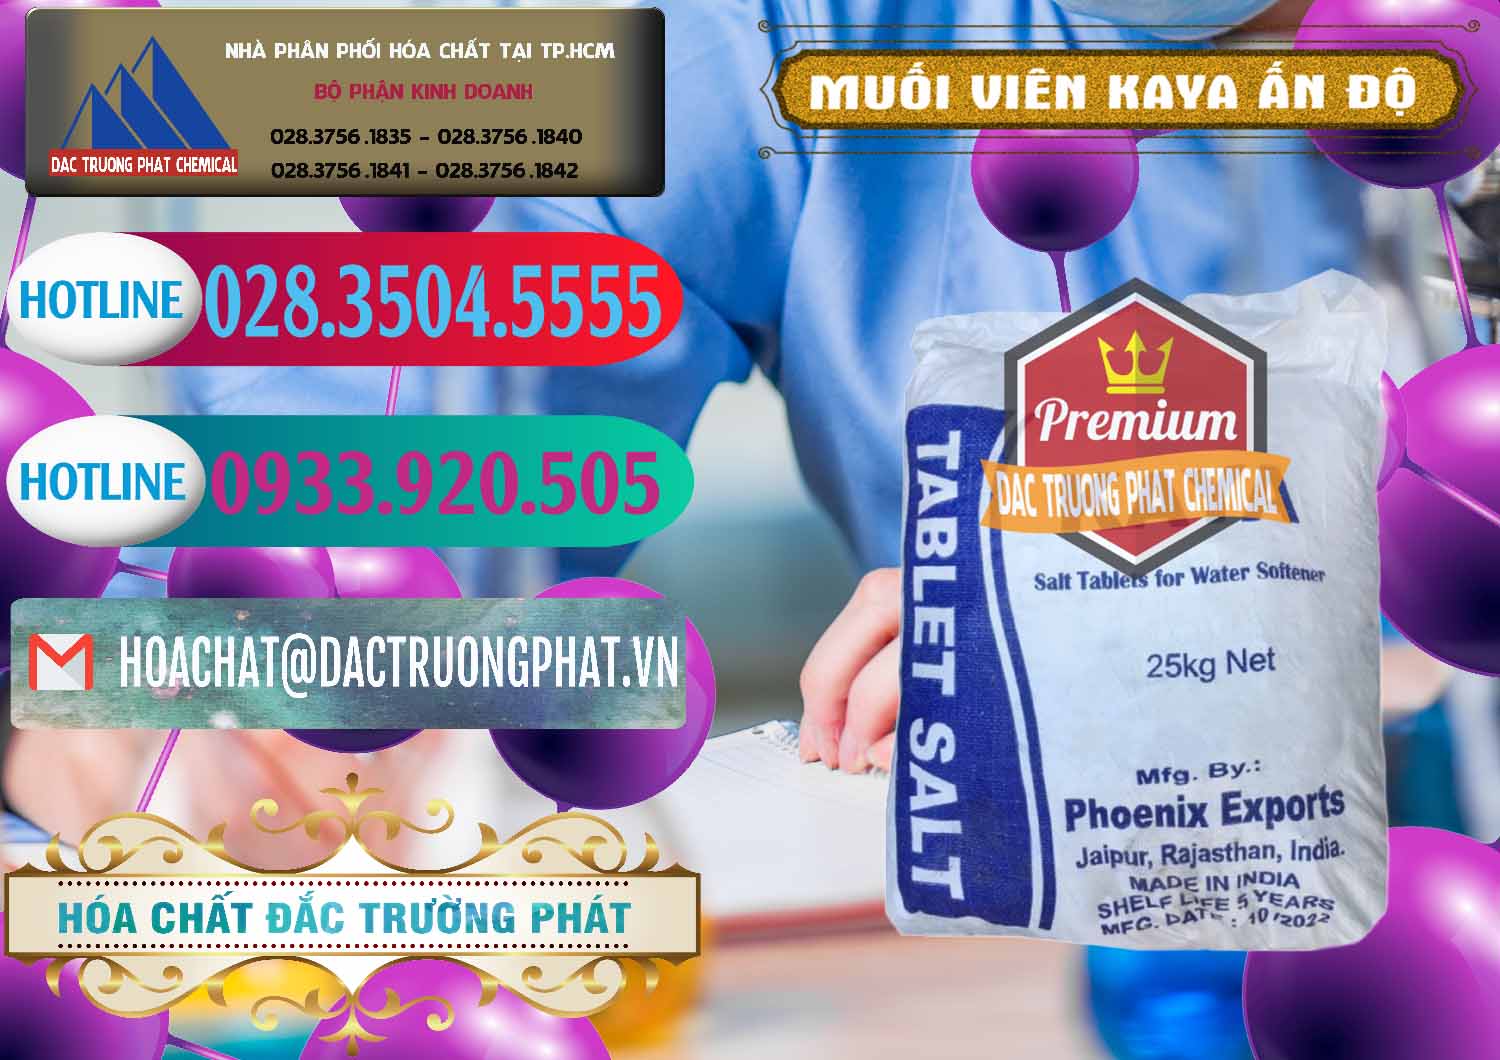 Nơi chuyên bán và cung cấp Muối NaCL – Sodium Chloride Dạng Viên Tablets Kaya Ấn Độ India - 0368 - Đơn vị chuyên cung cấp ( kinh doanh ) hóa chất tại TP.HCM - truongphat.vn